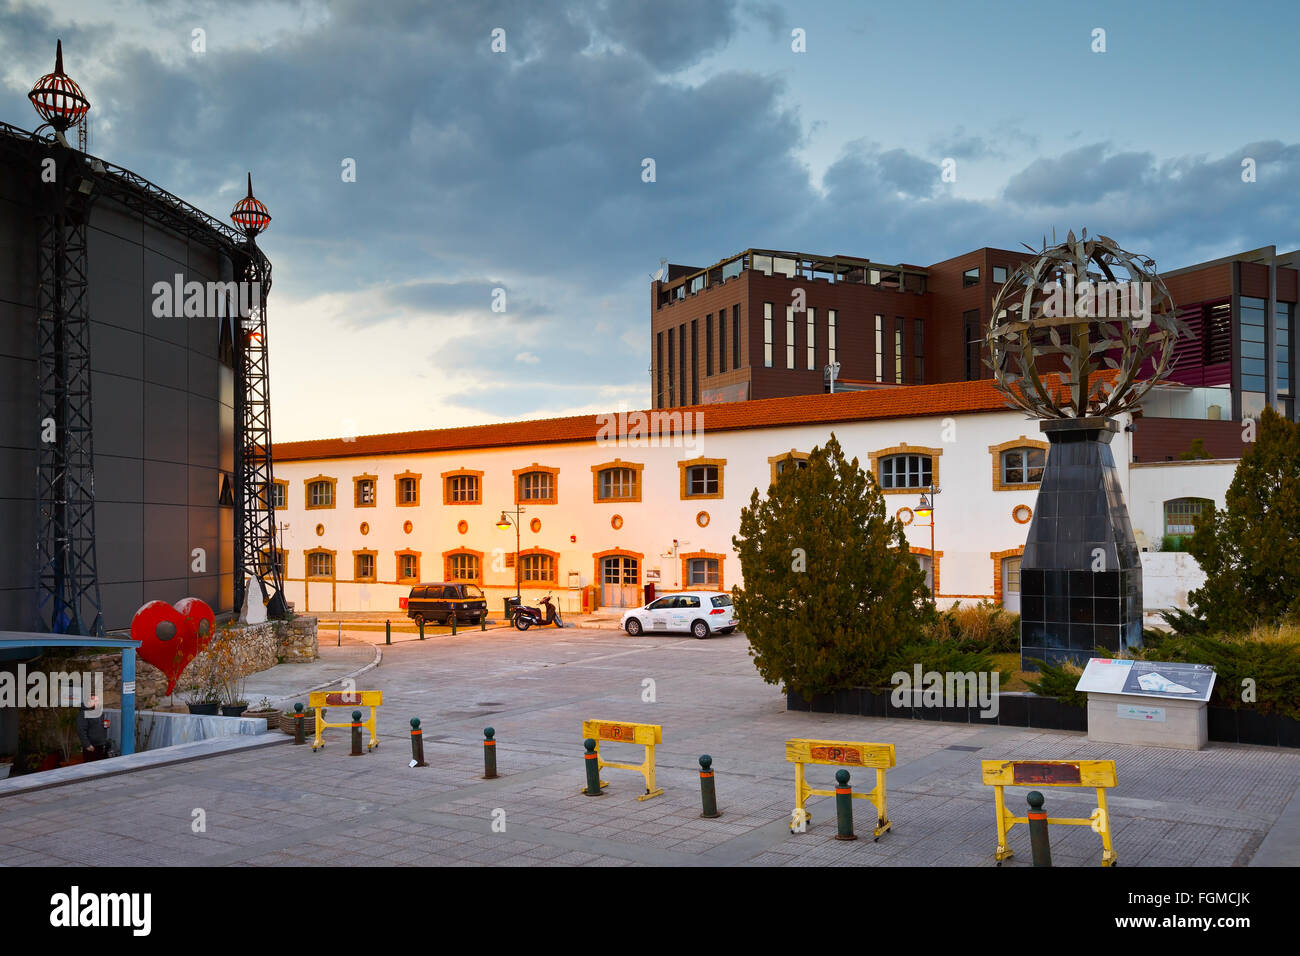 Vista di Technopolis, un museo industriale e un importante luogo culturale nei locali delle ex officine del gas della città di Atene mi Foto Stock